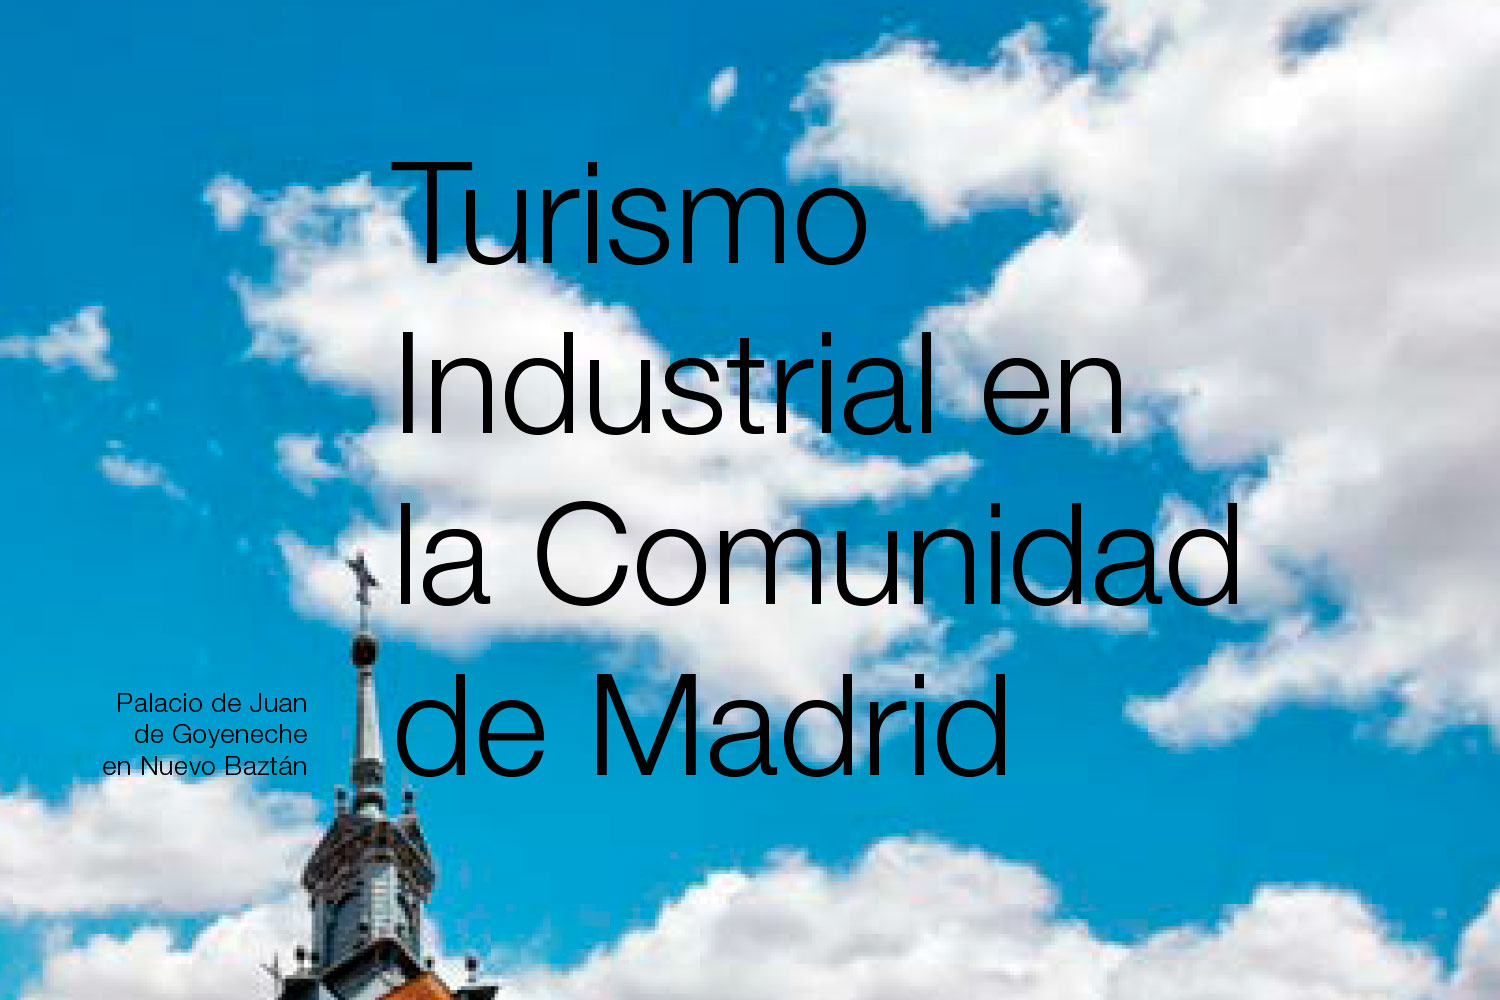 Turismo Industrial en la Comunidad de Madrid